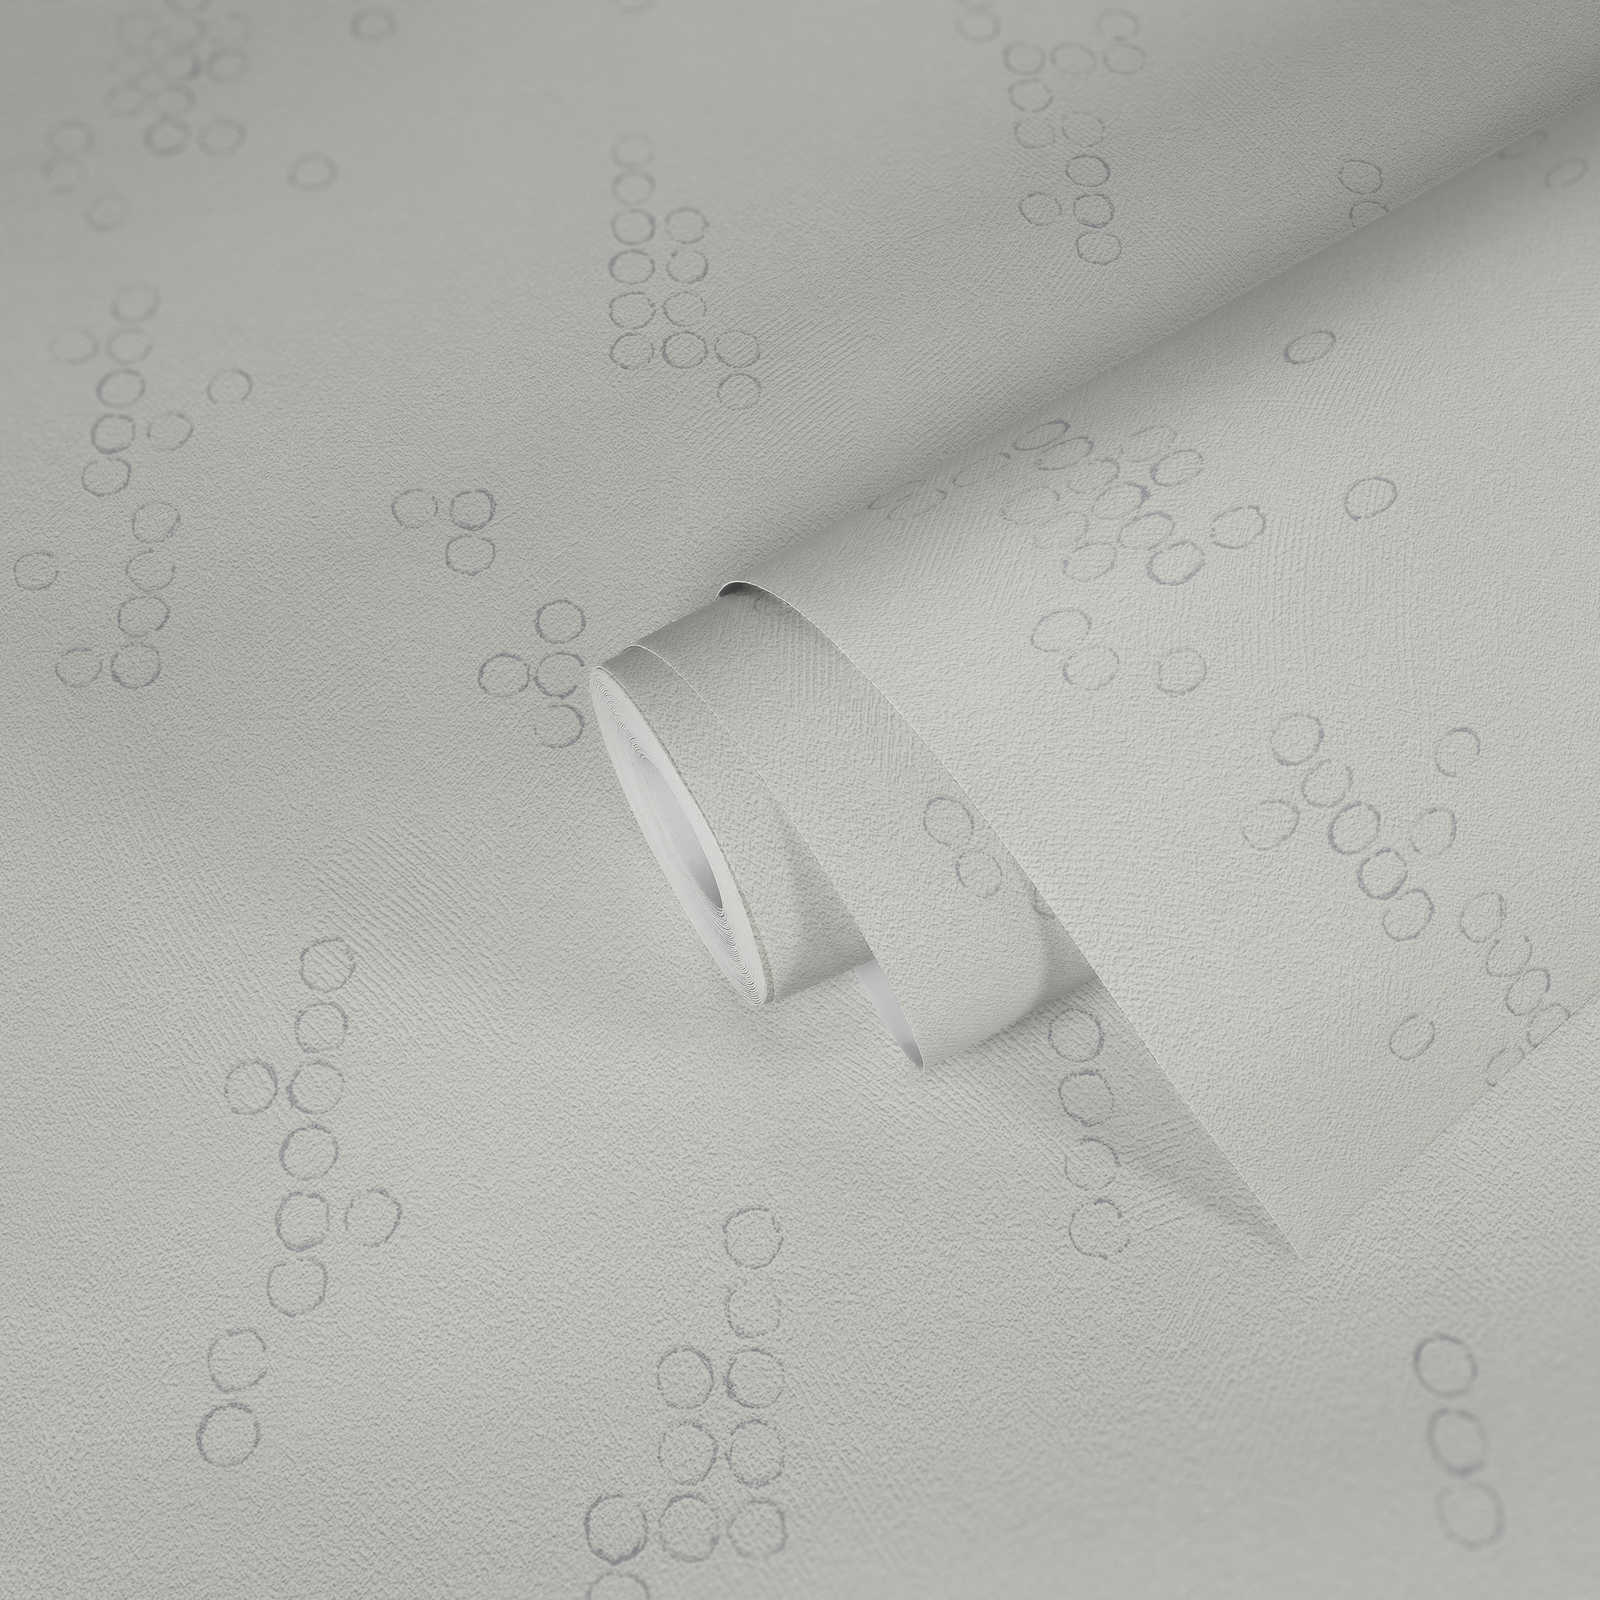             Tapete modernes Punkt-Muster & Struktureffekt – Weiß
        